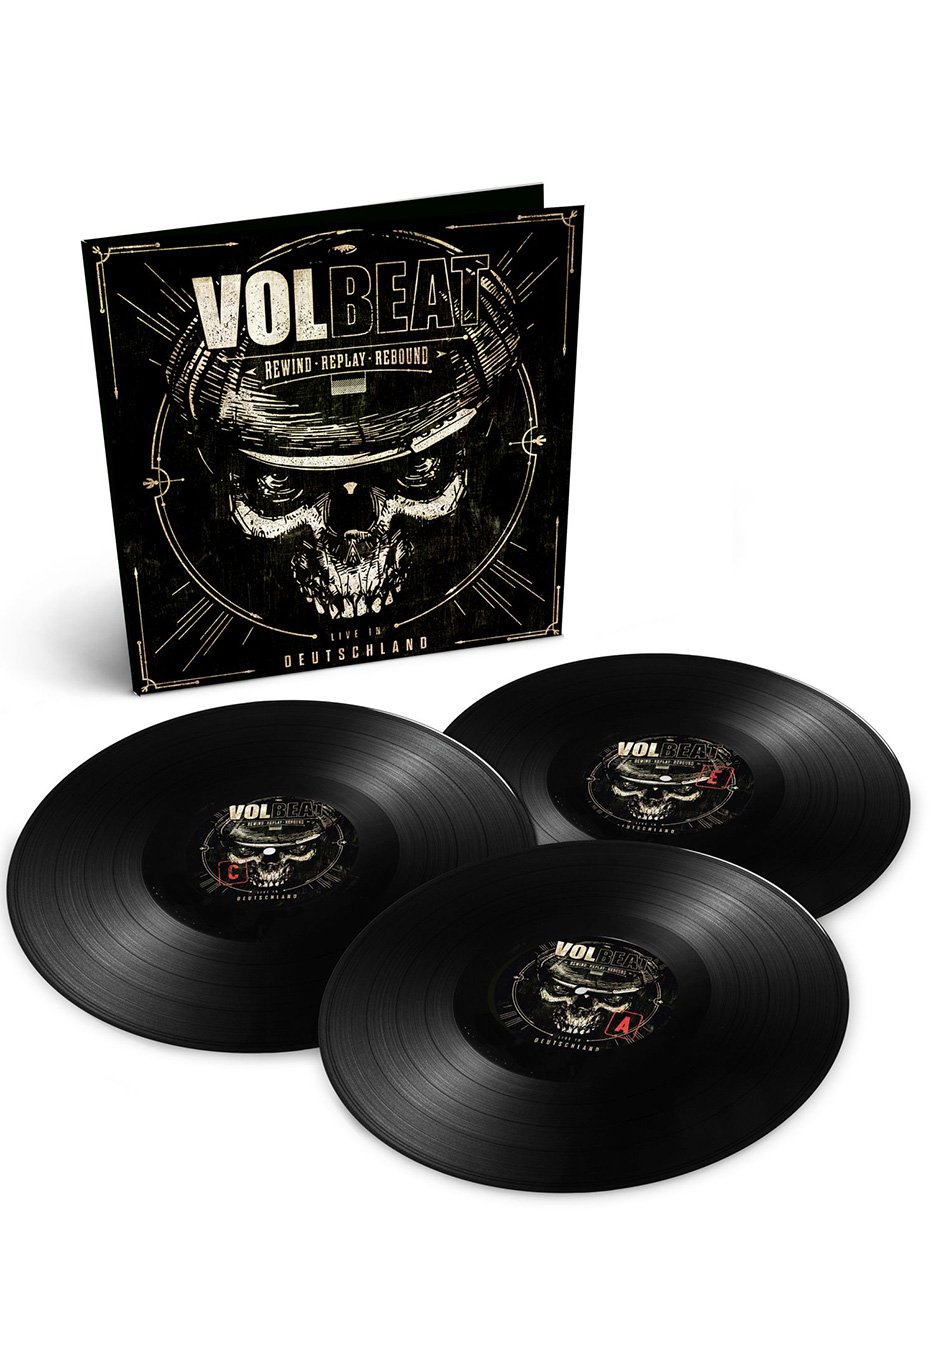 Volbeat - Rewind, Replay, Rebound; Live in Deutschland - 3 Vinyl